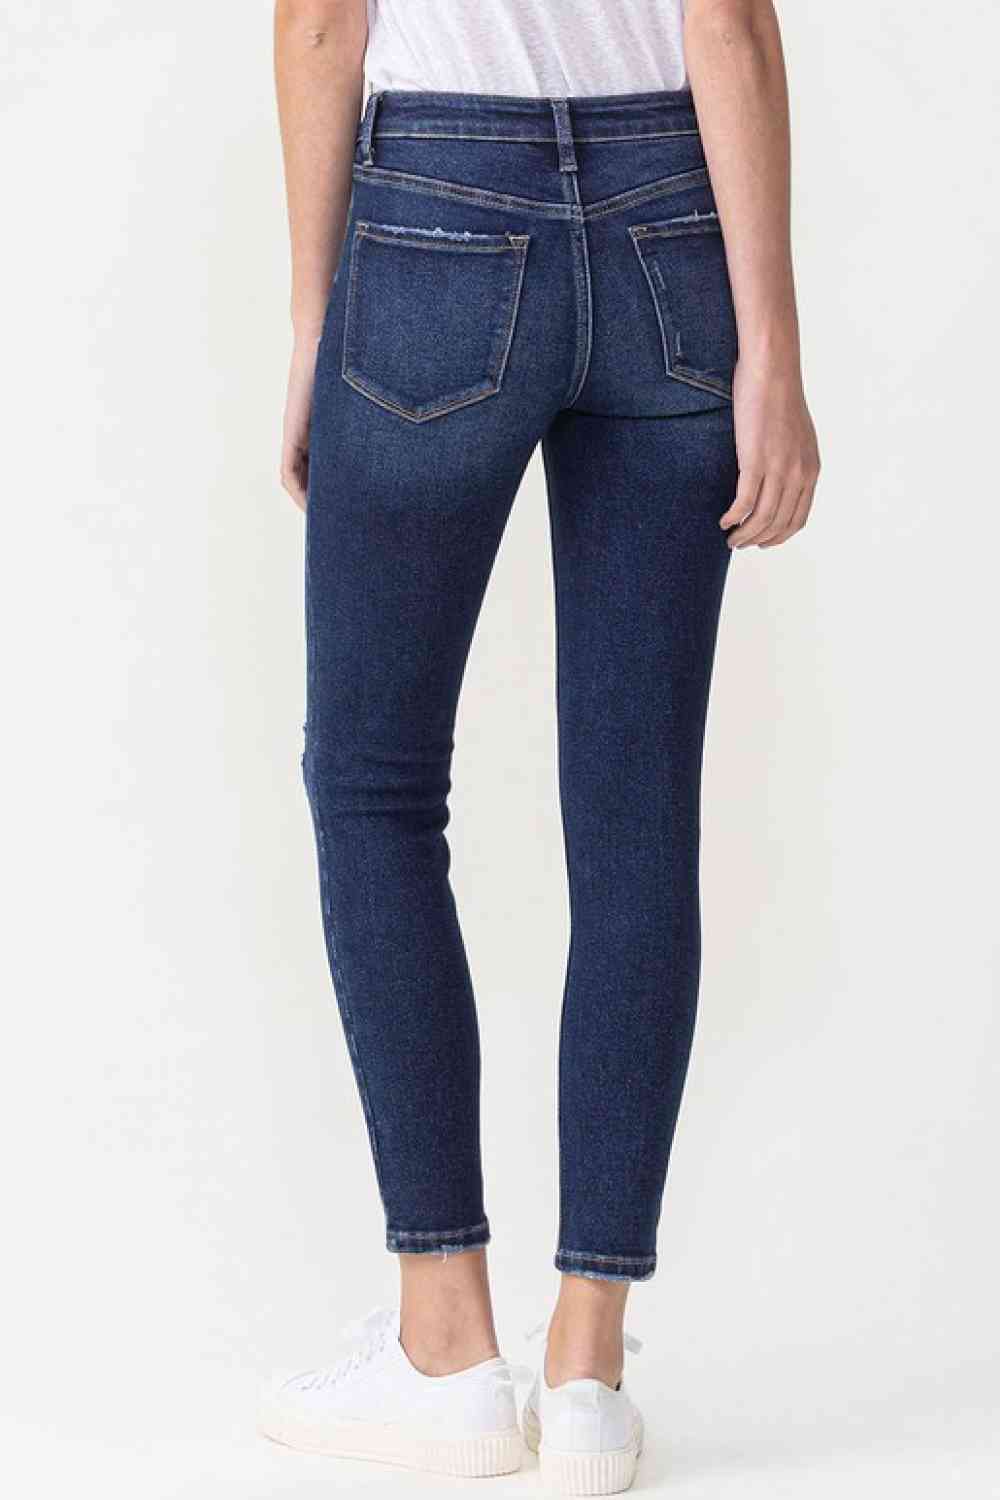 Francesca - Lovervet Midrise Crop Skinny Jeans